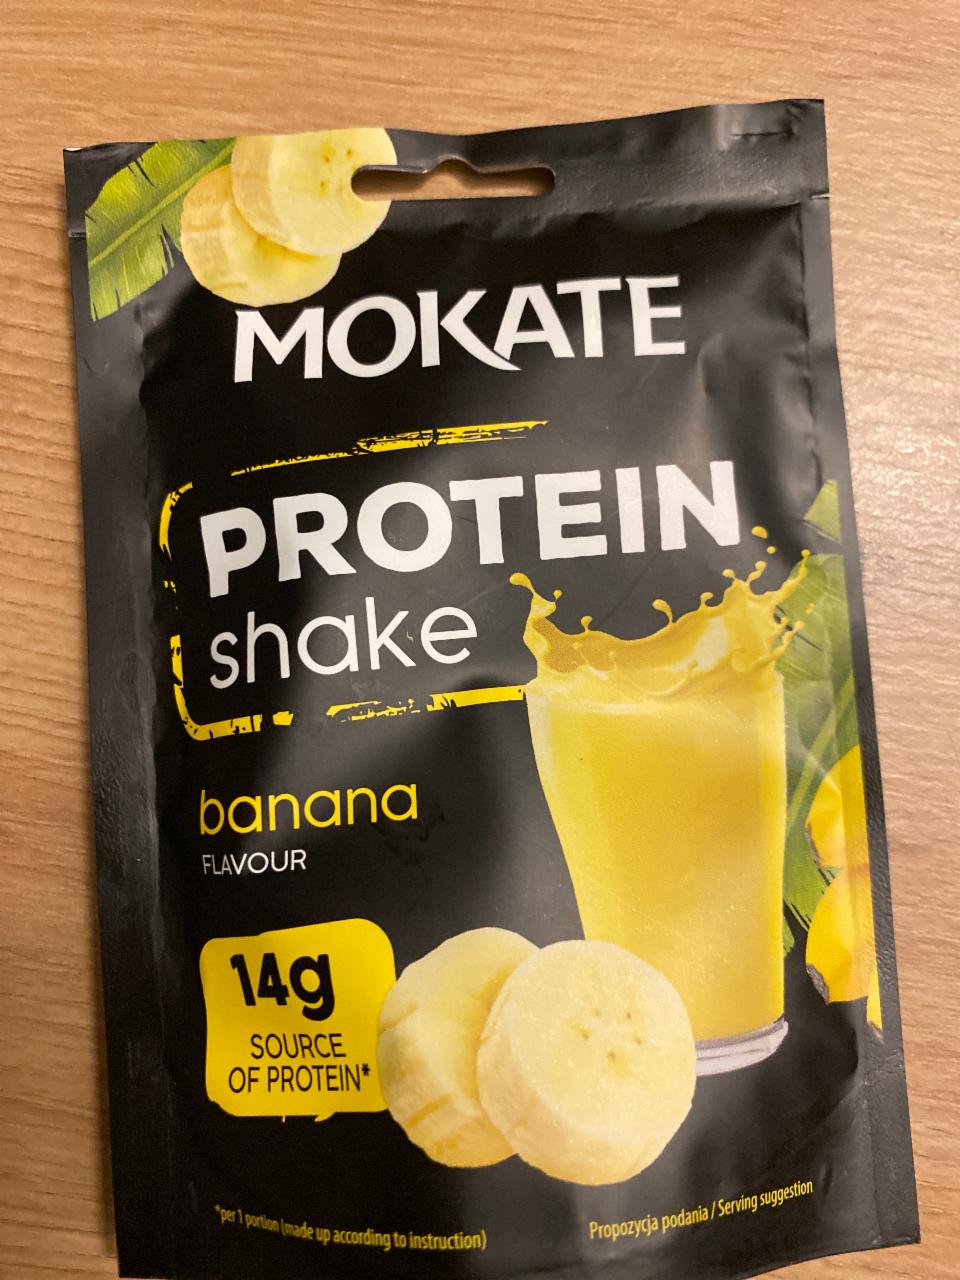 Fotografie - Protein shake Banana flavour Mokate